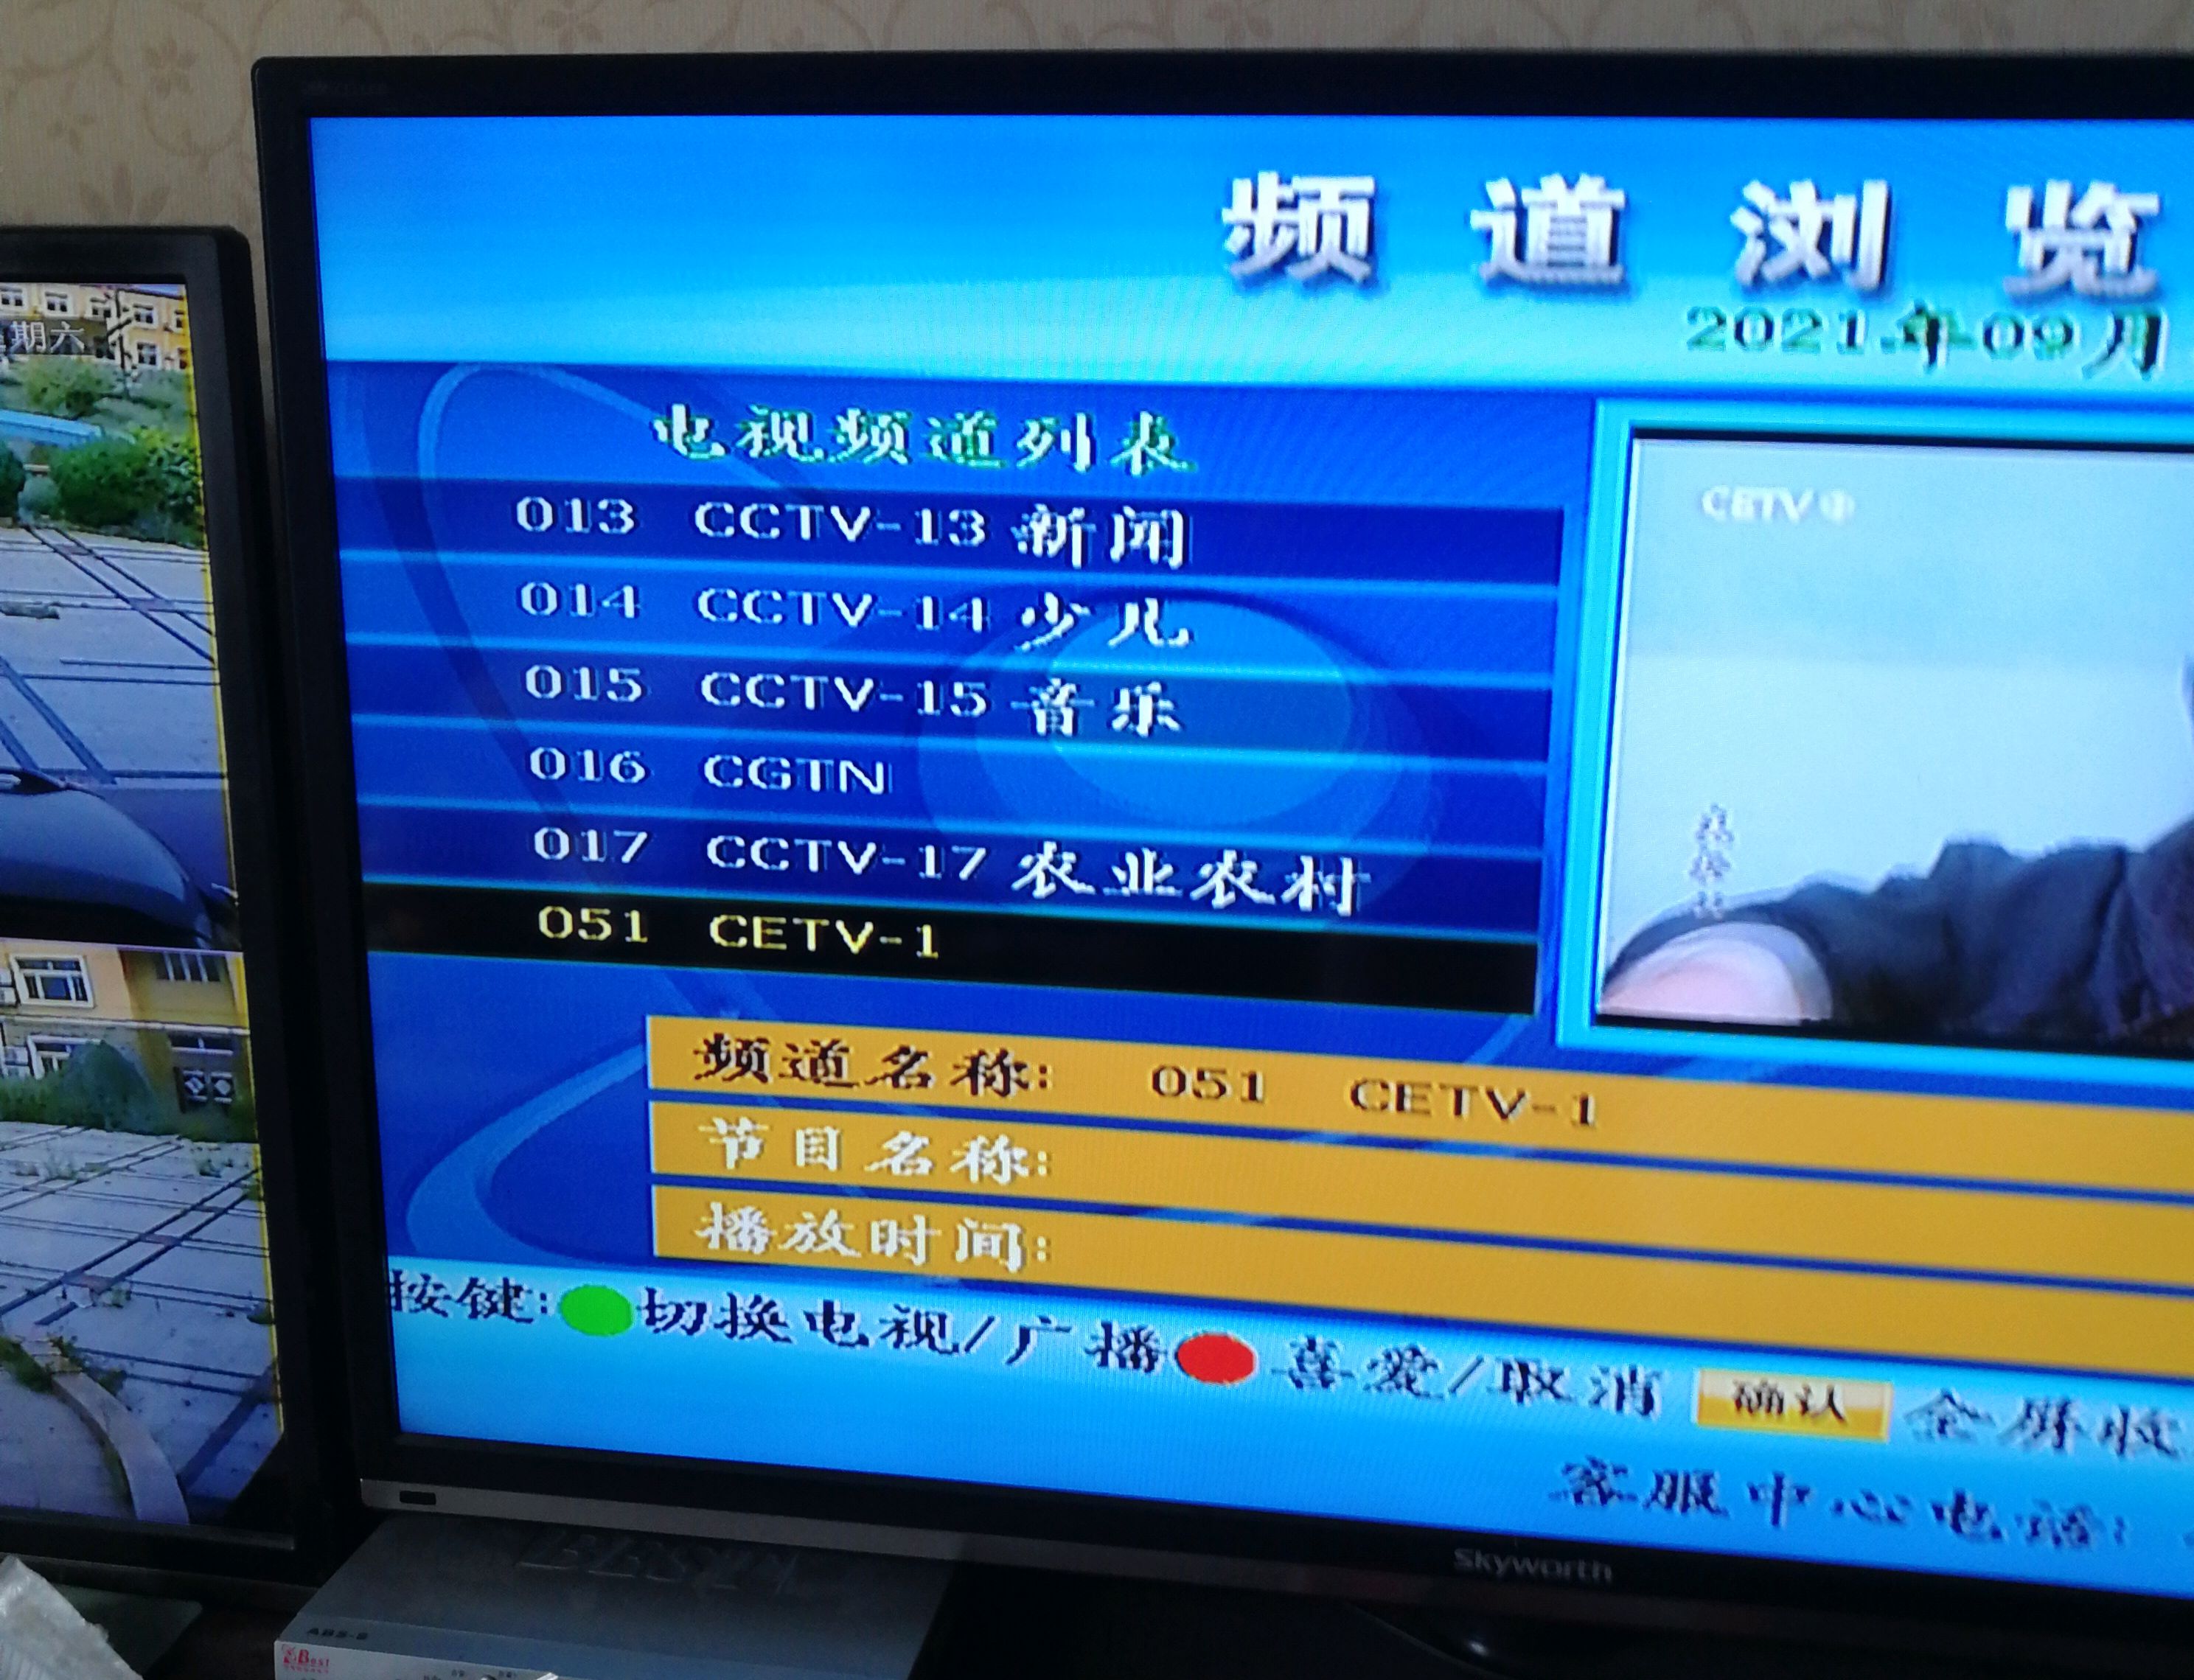 中国教育电视台(CETV-1) 怎么找。在电视里？